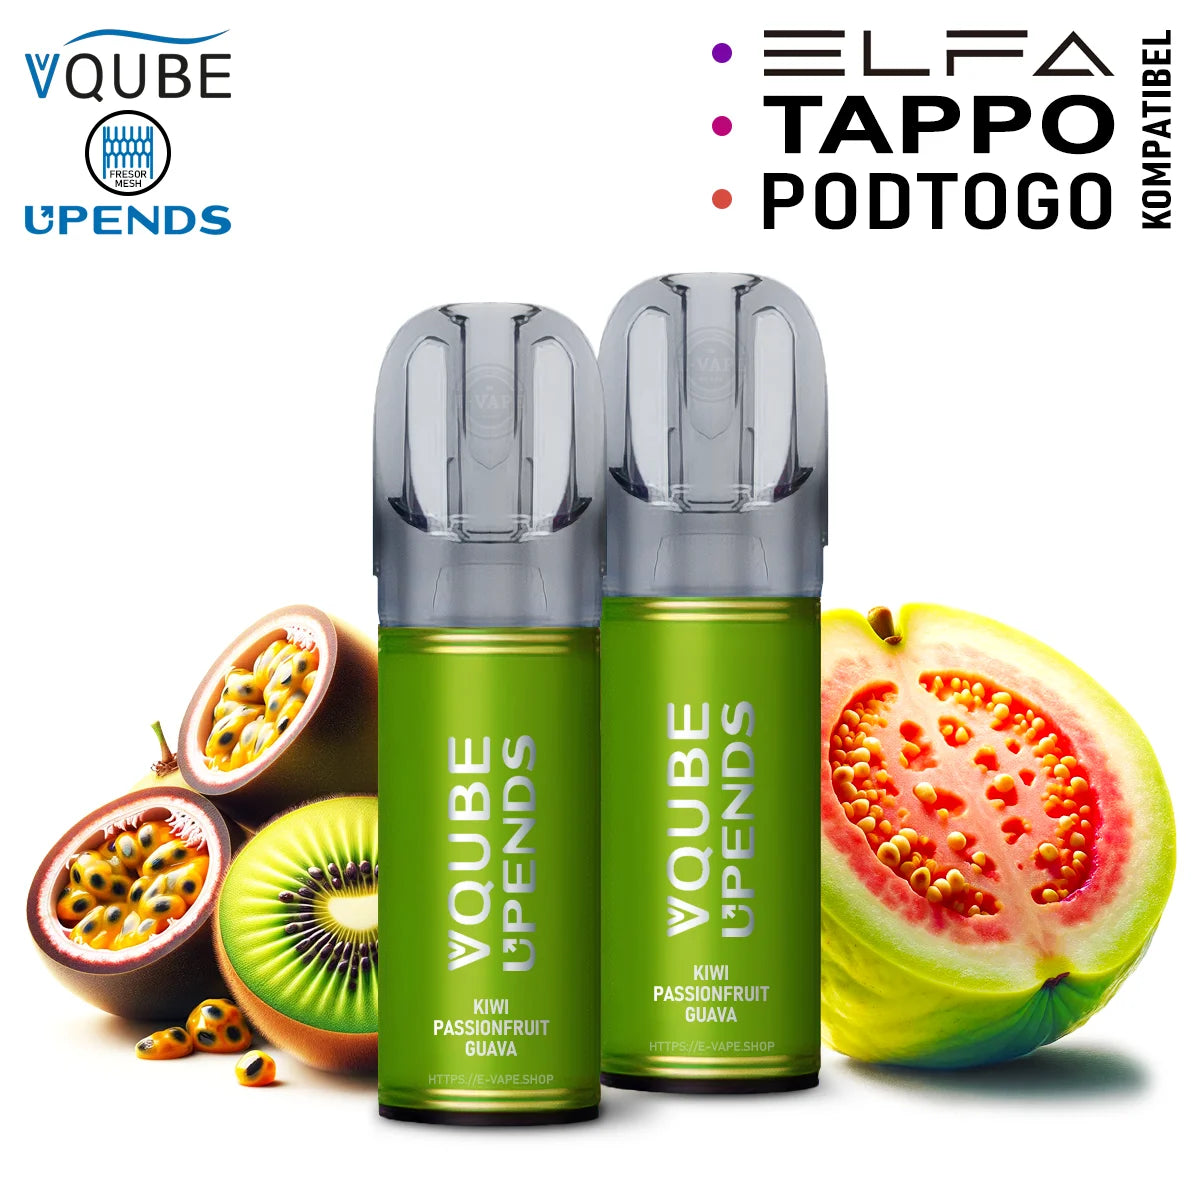 Vqube Upends Pod Kiwi Passion Fruit 20mg ELFA / Tappo / Pod2Go